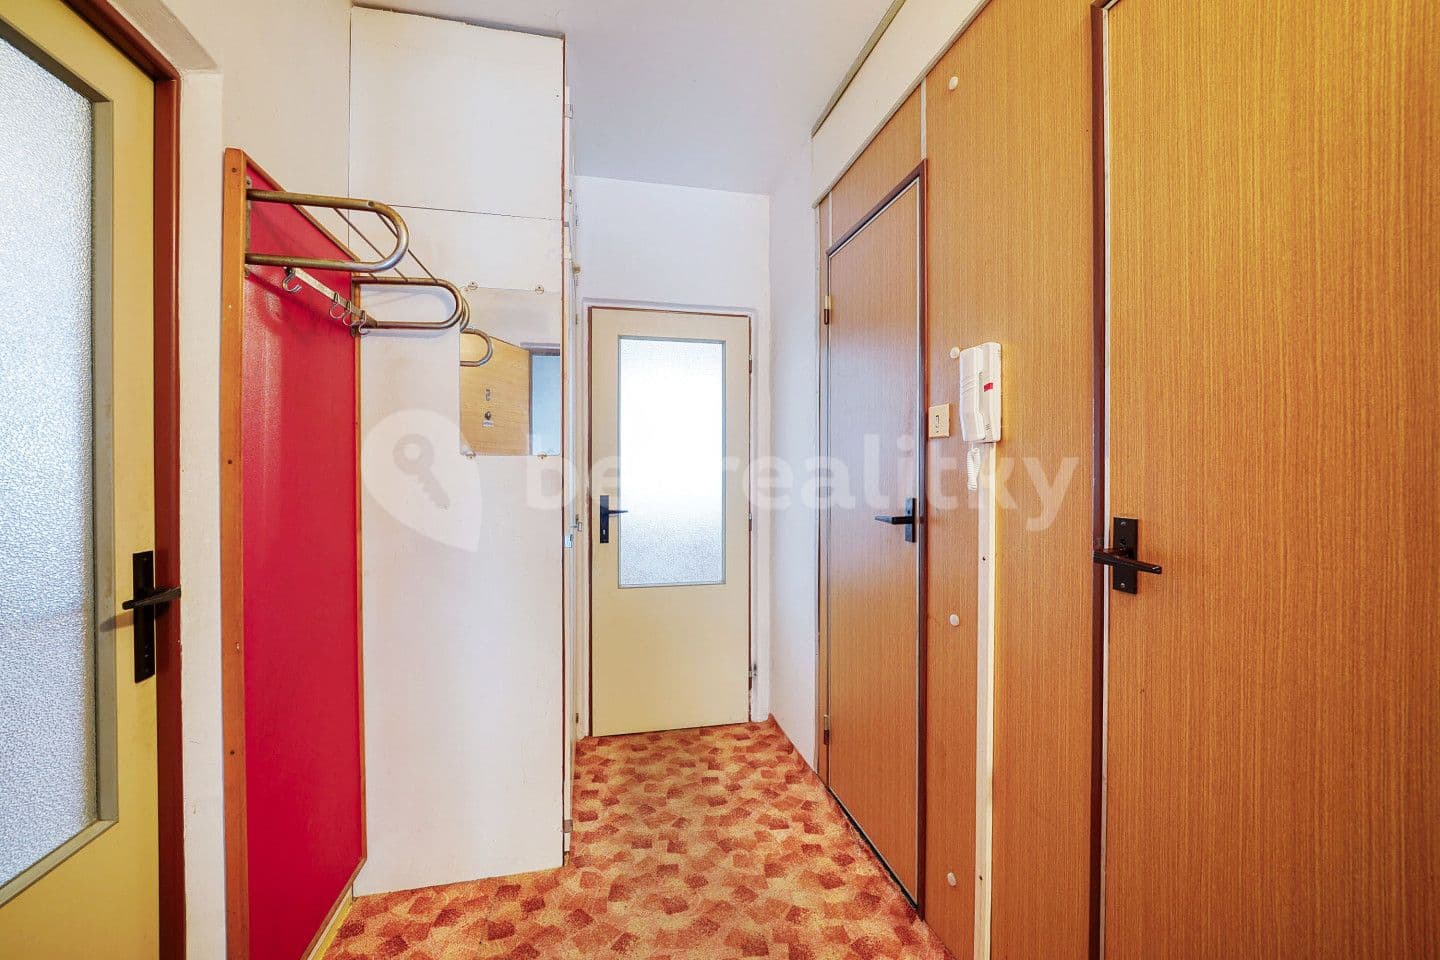 1 bedroom flat for sale, 40 m², Pod Makovým vrchem, Holýšov, Plzeňský Region